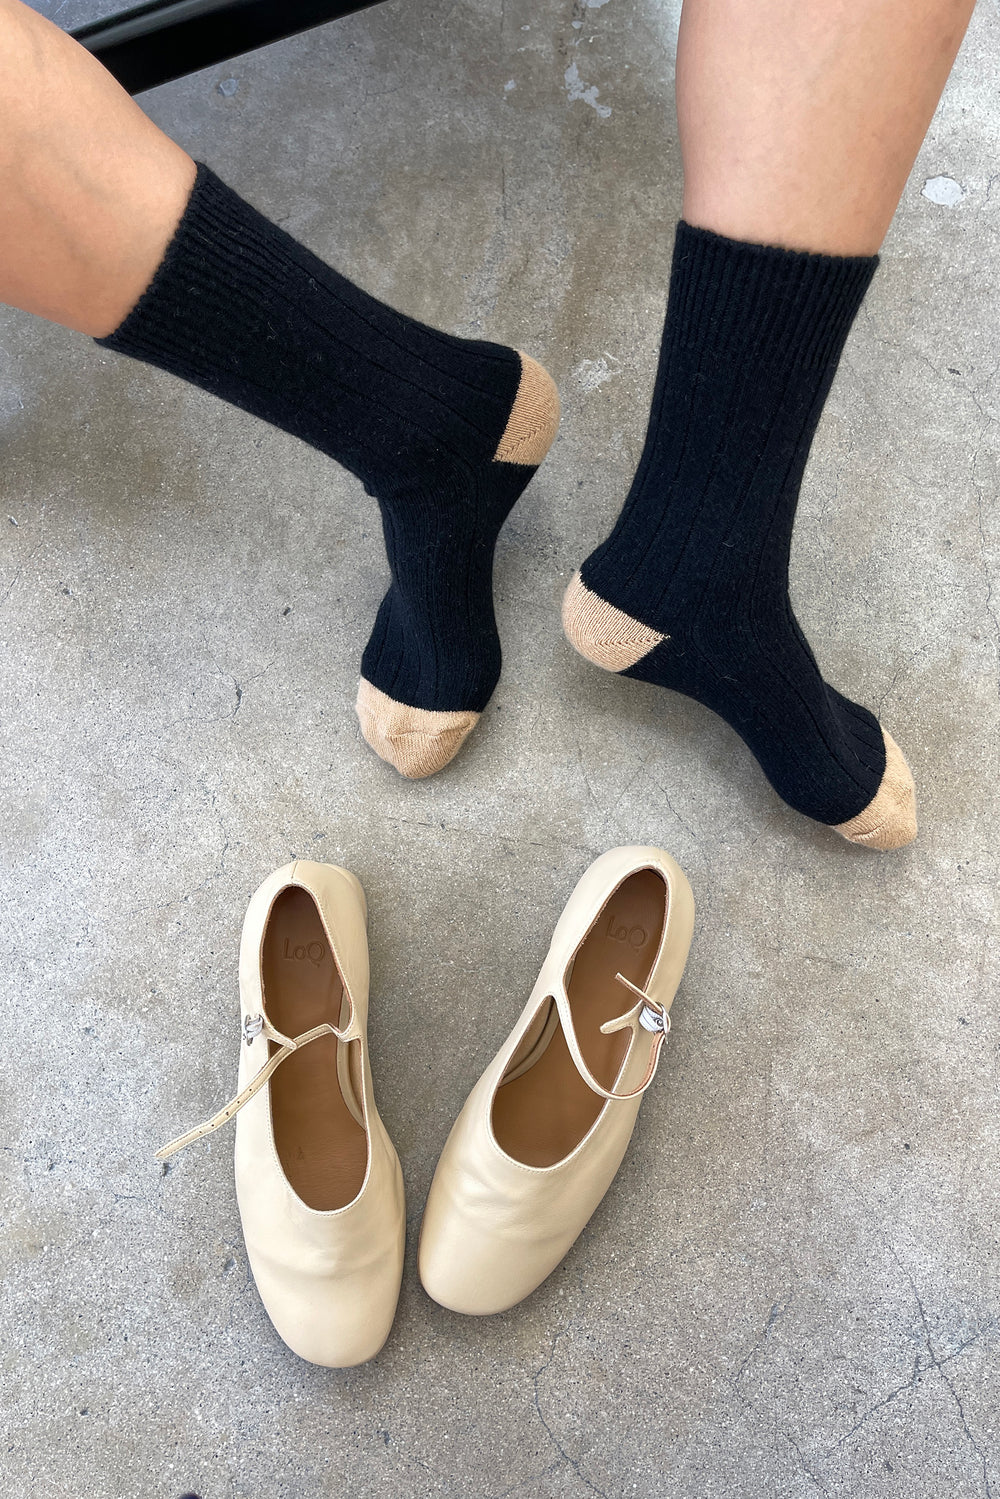 Le Bon Shoppe | Classic Cashmere Socks - Black